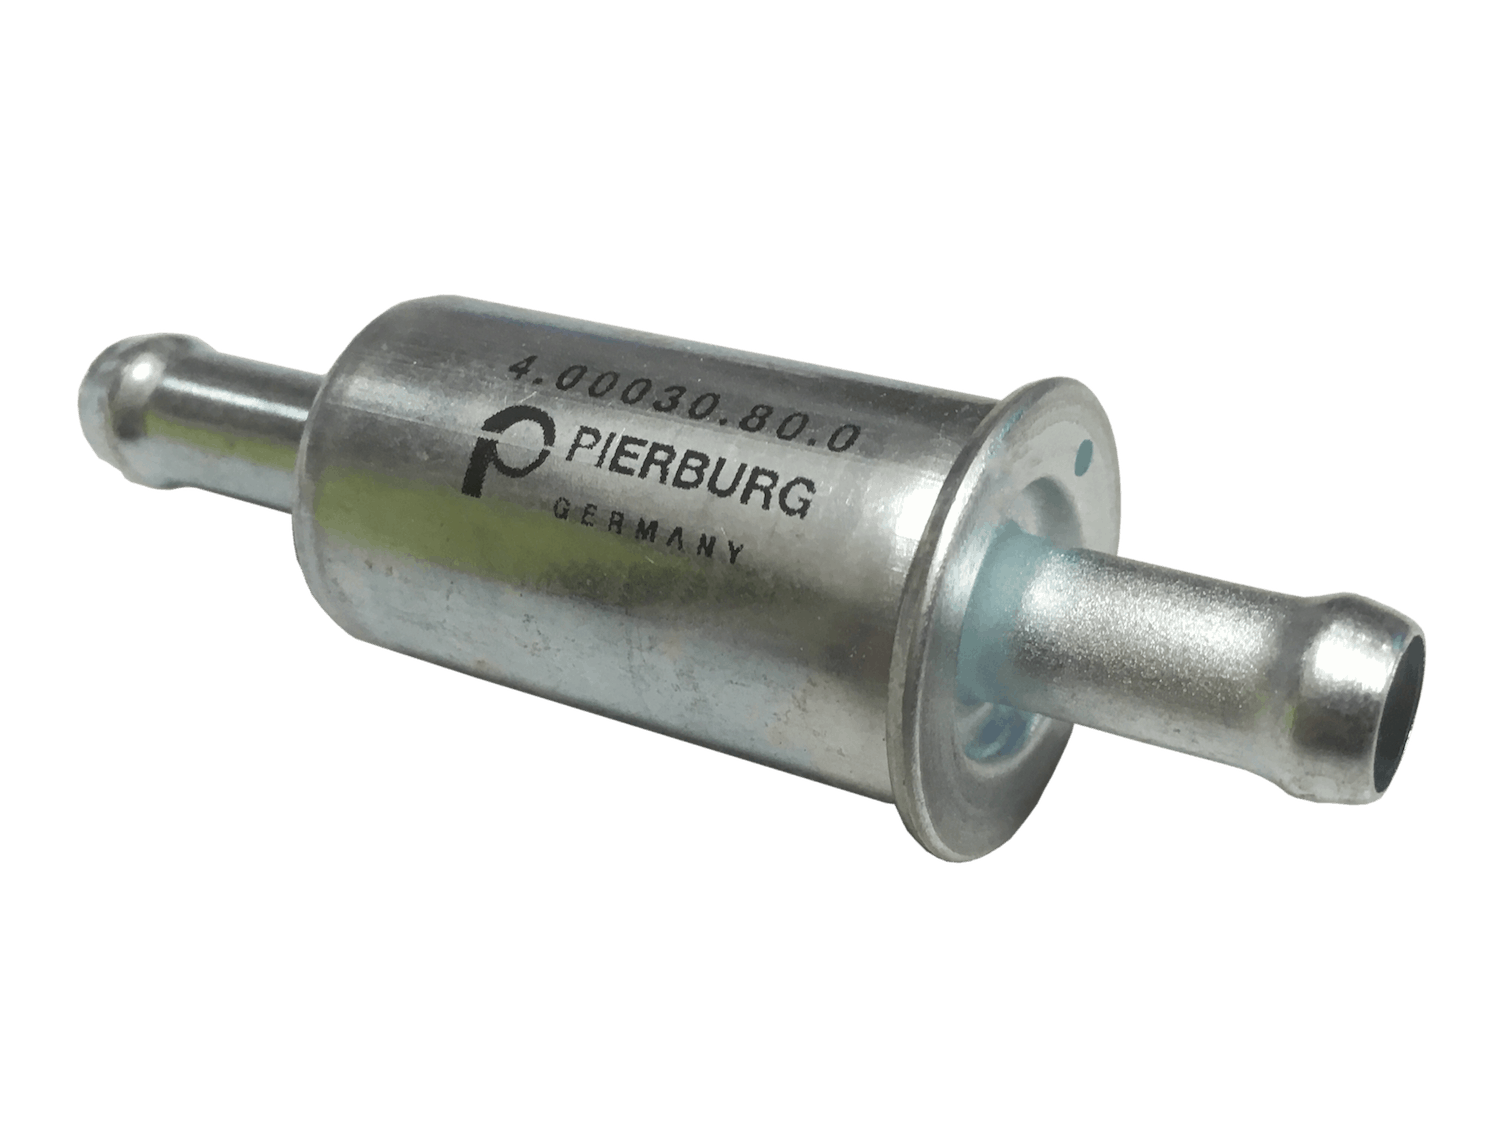 Kraftstofffilter 8mm von Pierburg 4.00030.80.0 - HARDI Automotive